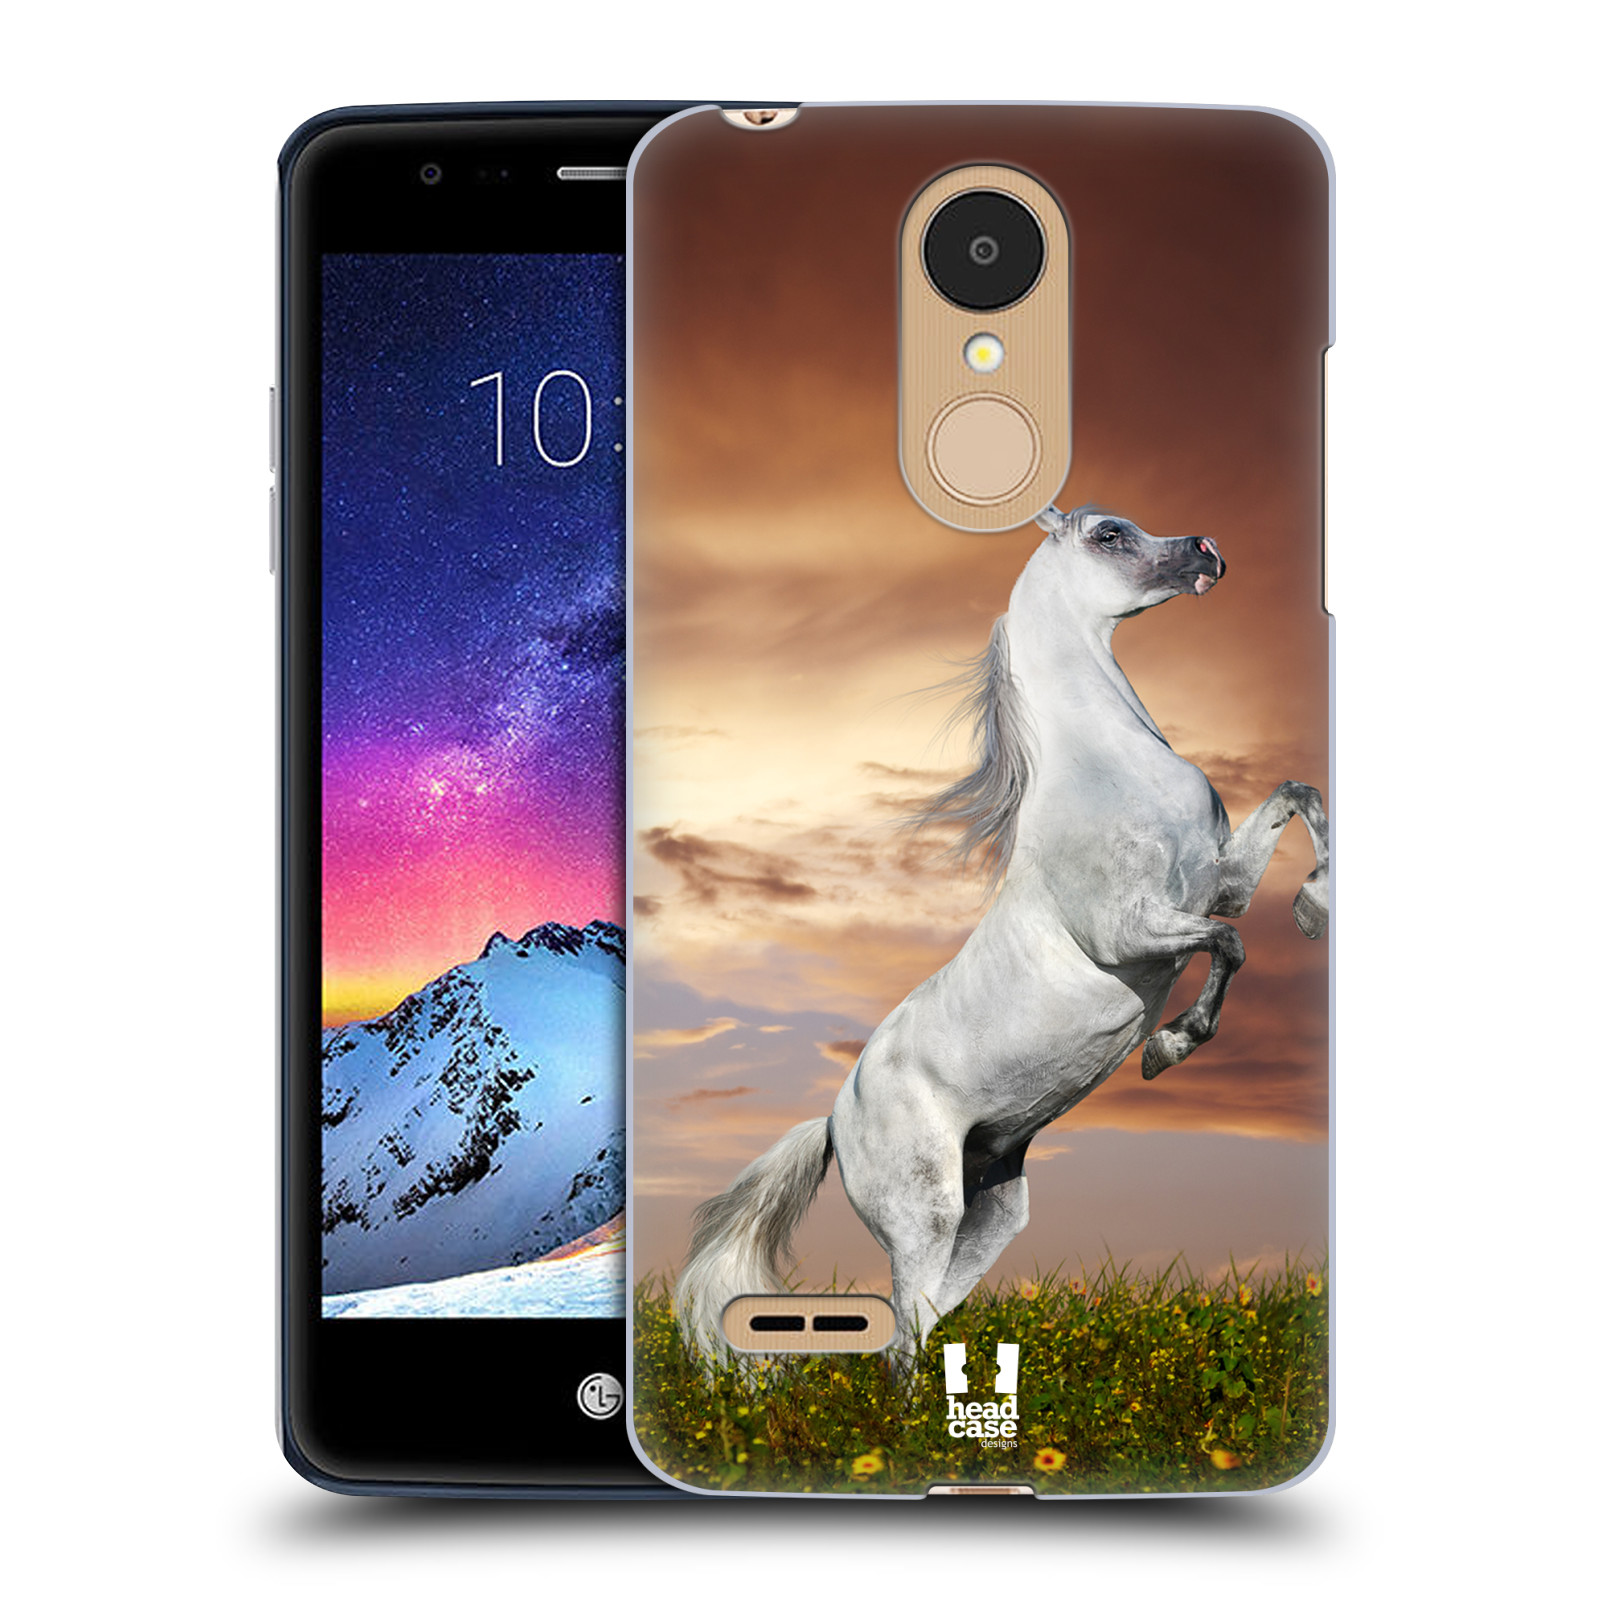 HEAD CASE plastový obal na mobil LG K9 / K8 2018 vzor Divočina, Divoký život a zvířata foto DIVOKÝ KŮŇ MUSTANG BÍLÁ